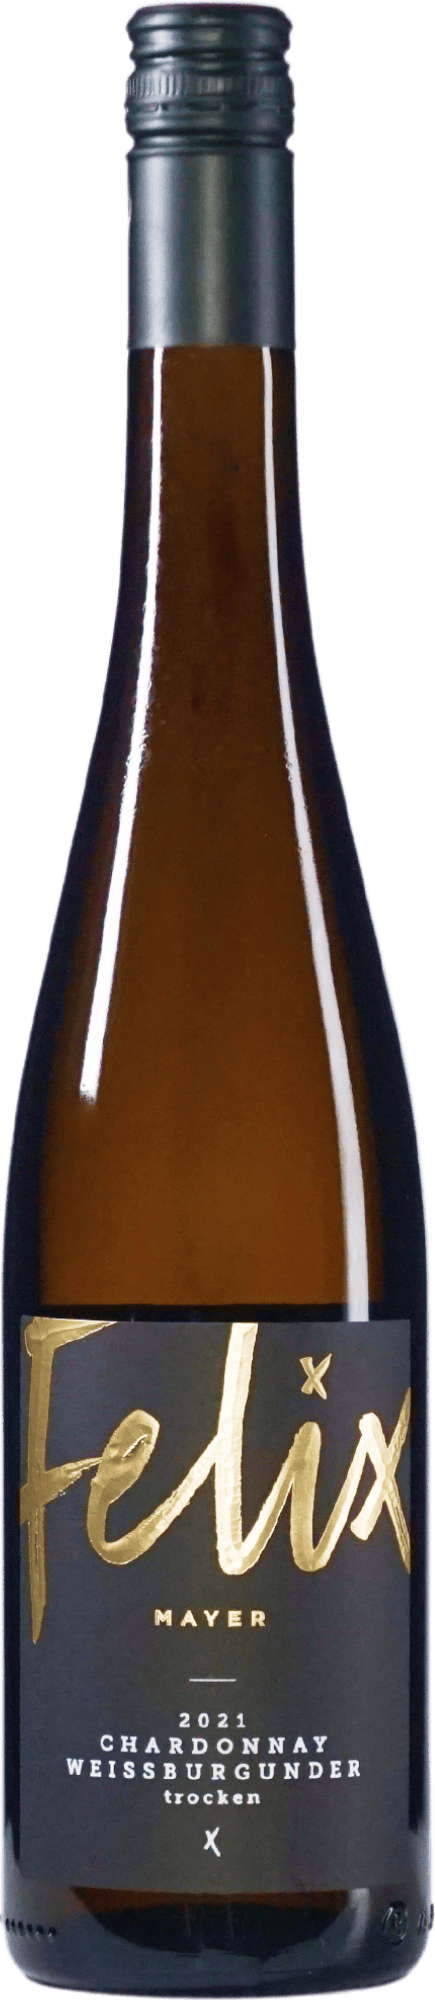 Chardonnay Weißburgunder